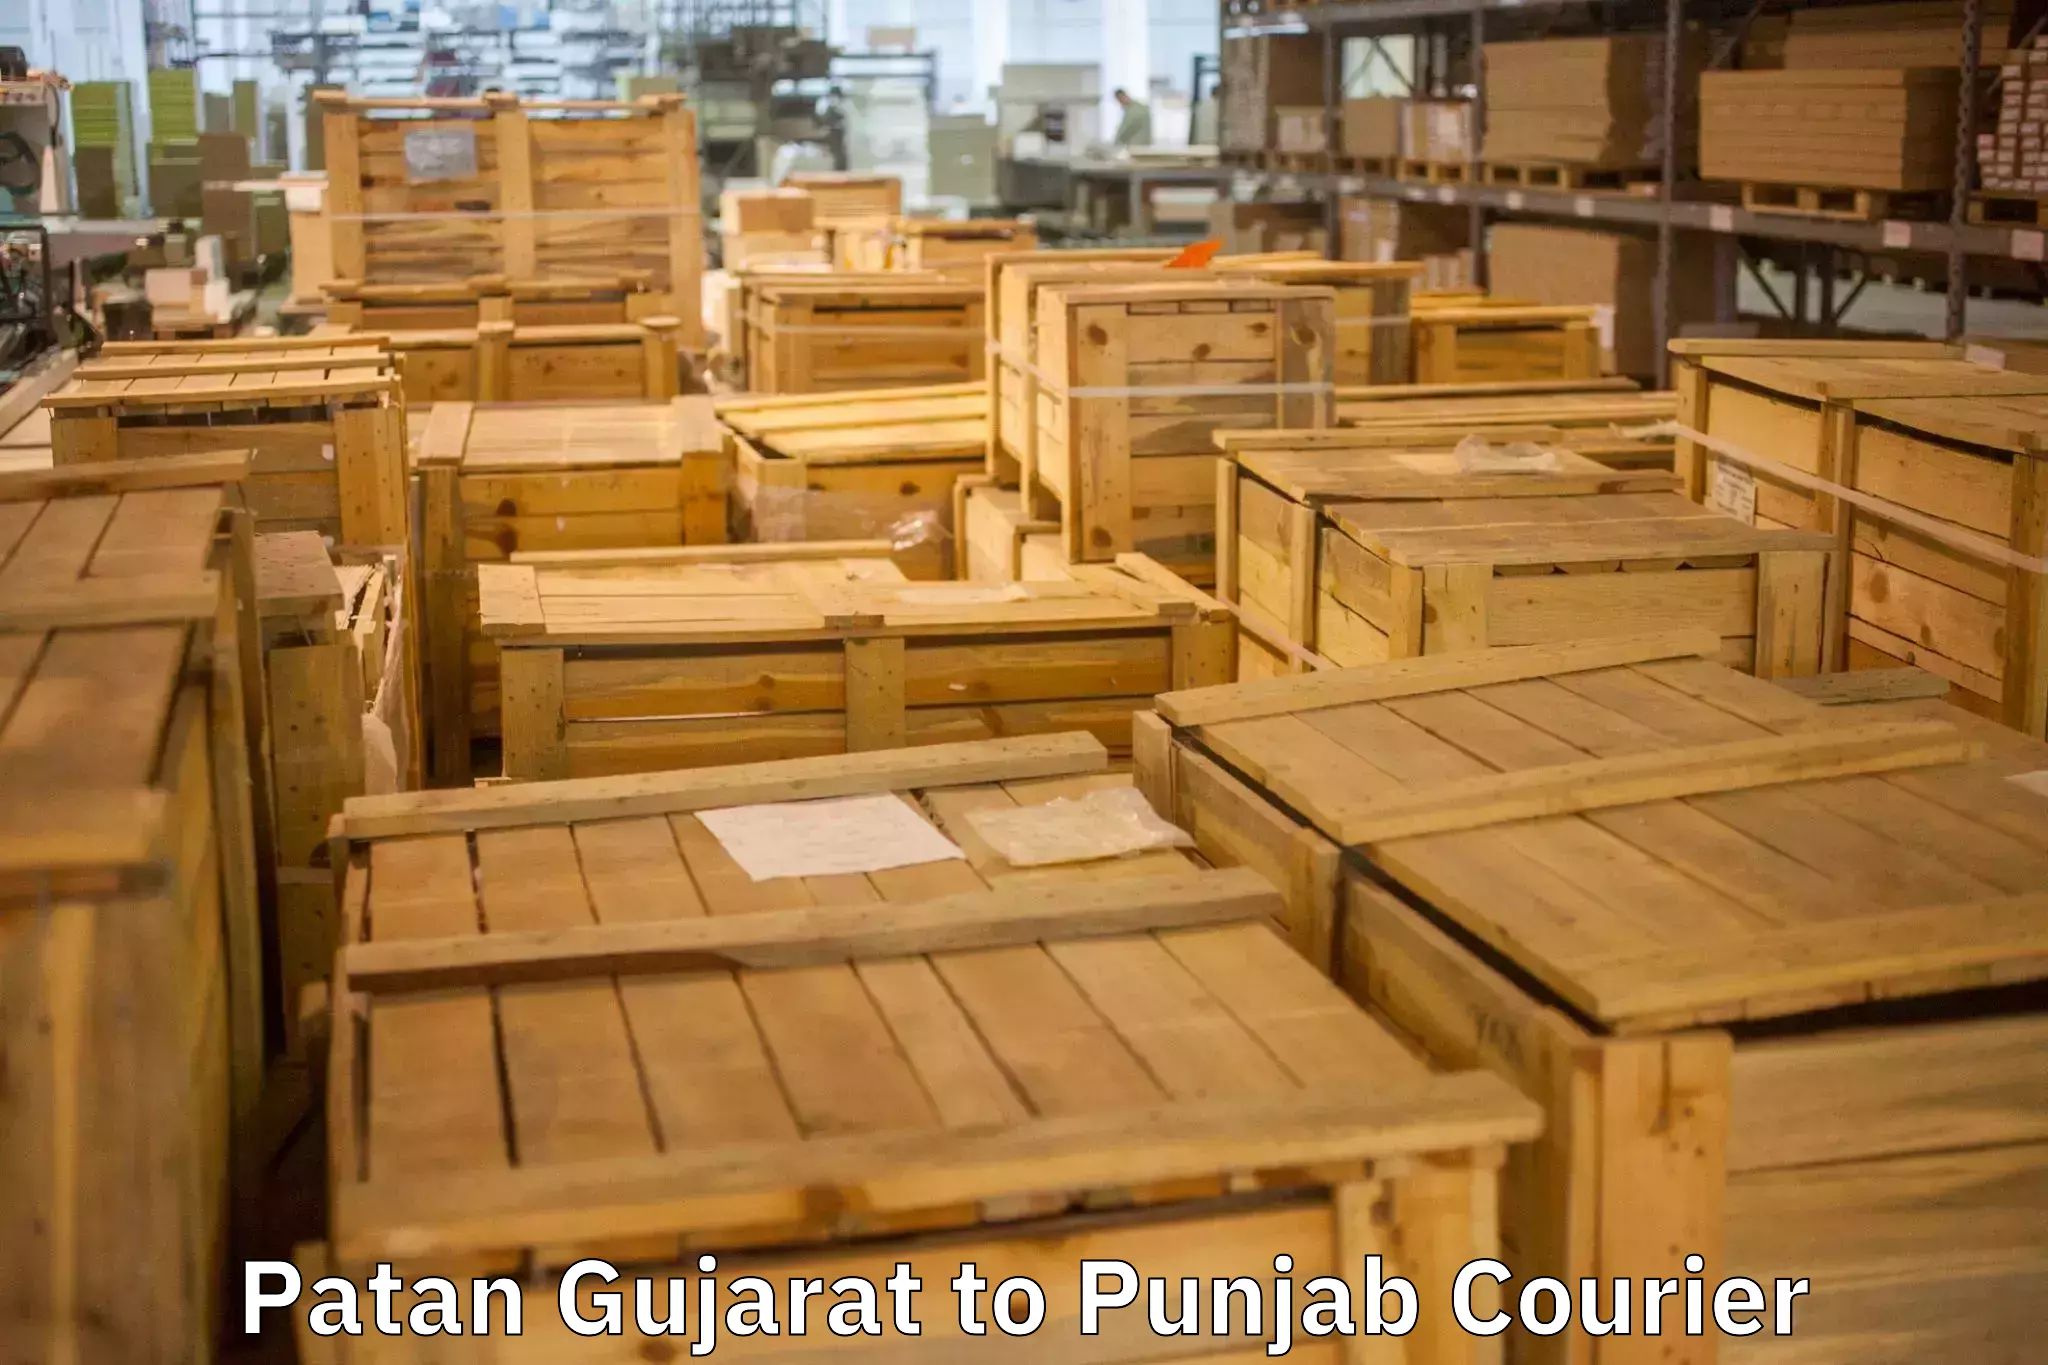 Personalized moving plans Patan Gujarat to Punjab